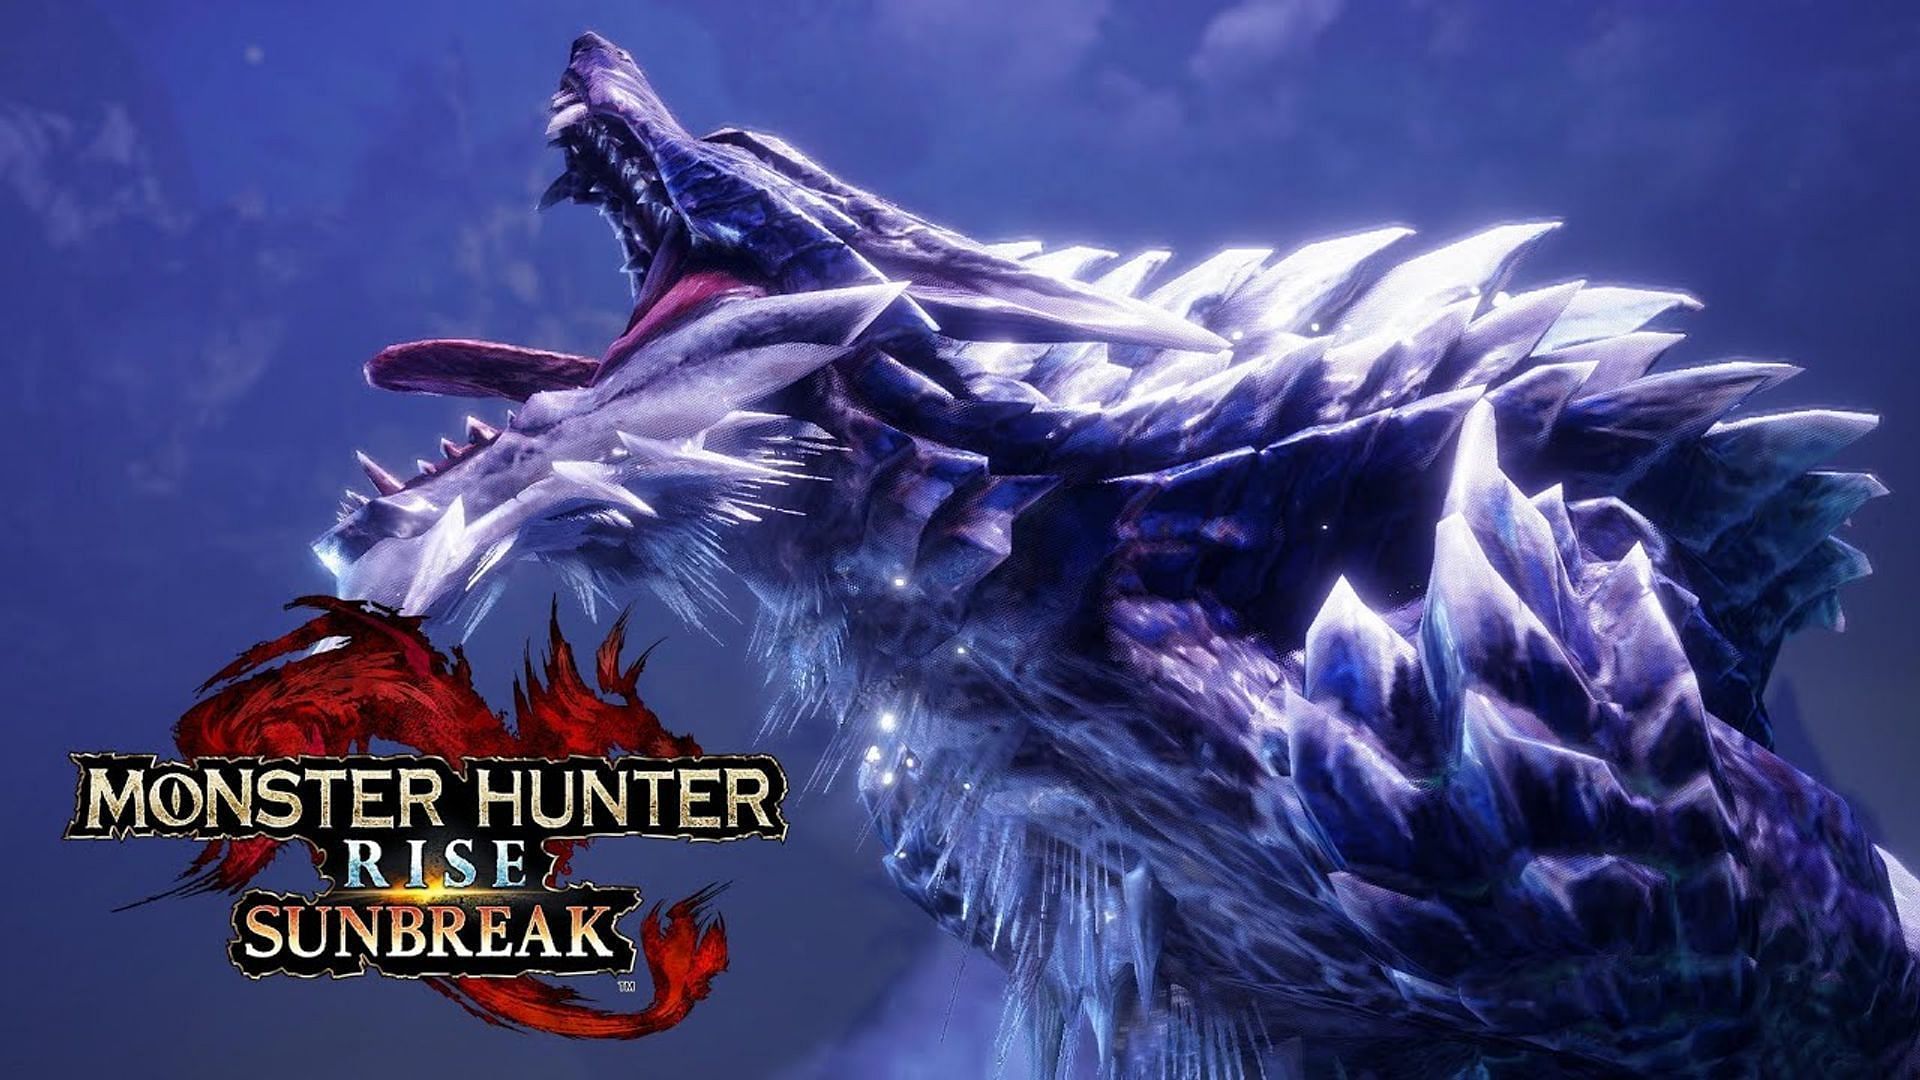 Official imagery for Monster Hunter Rise: Sunbreak (Image via Capcom)